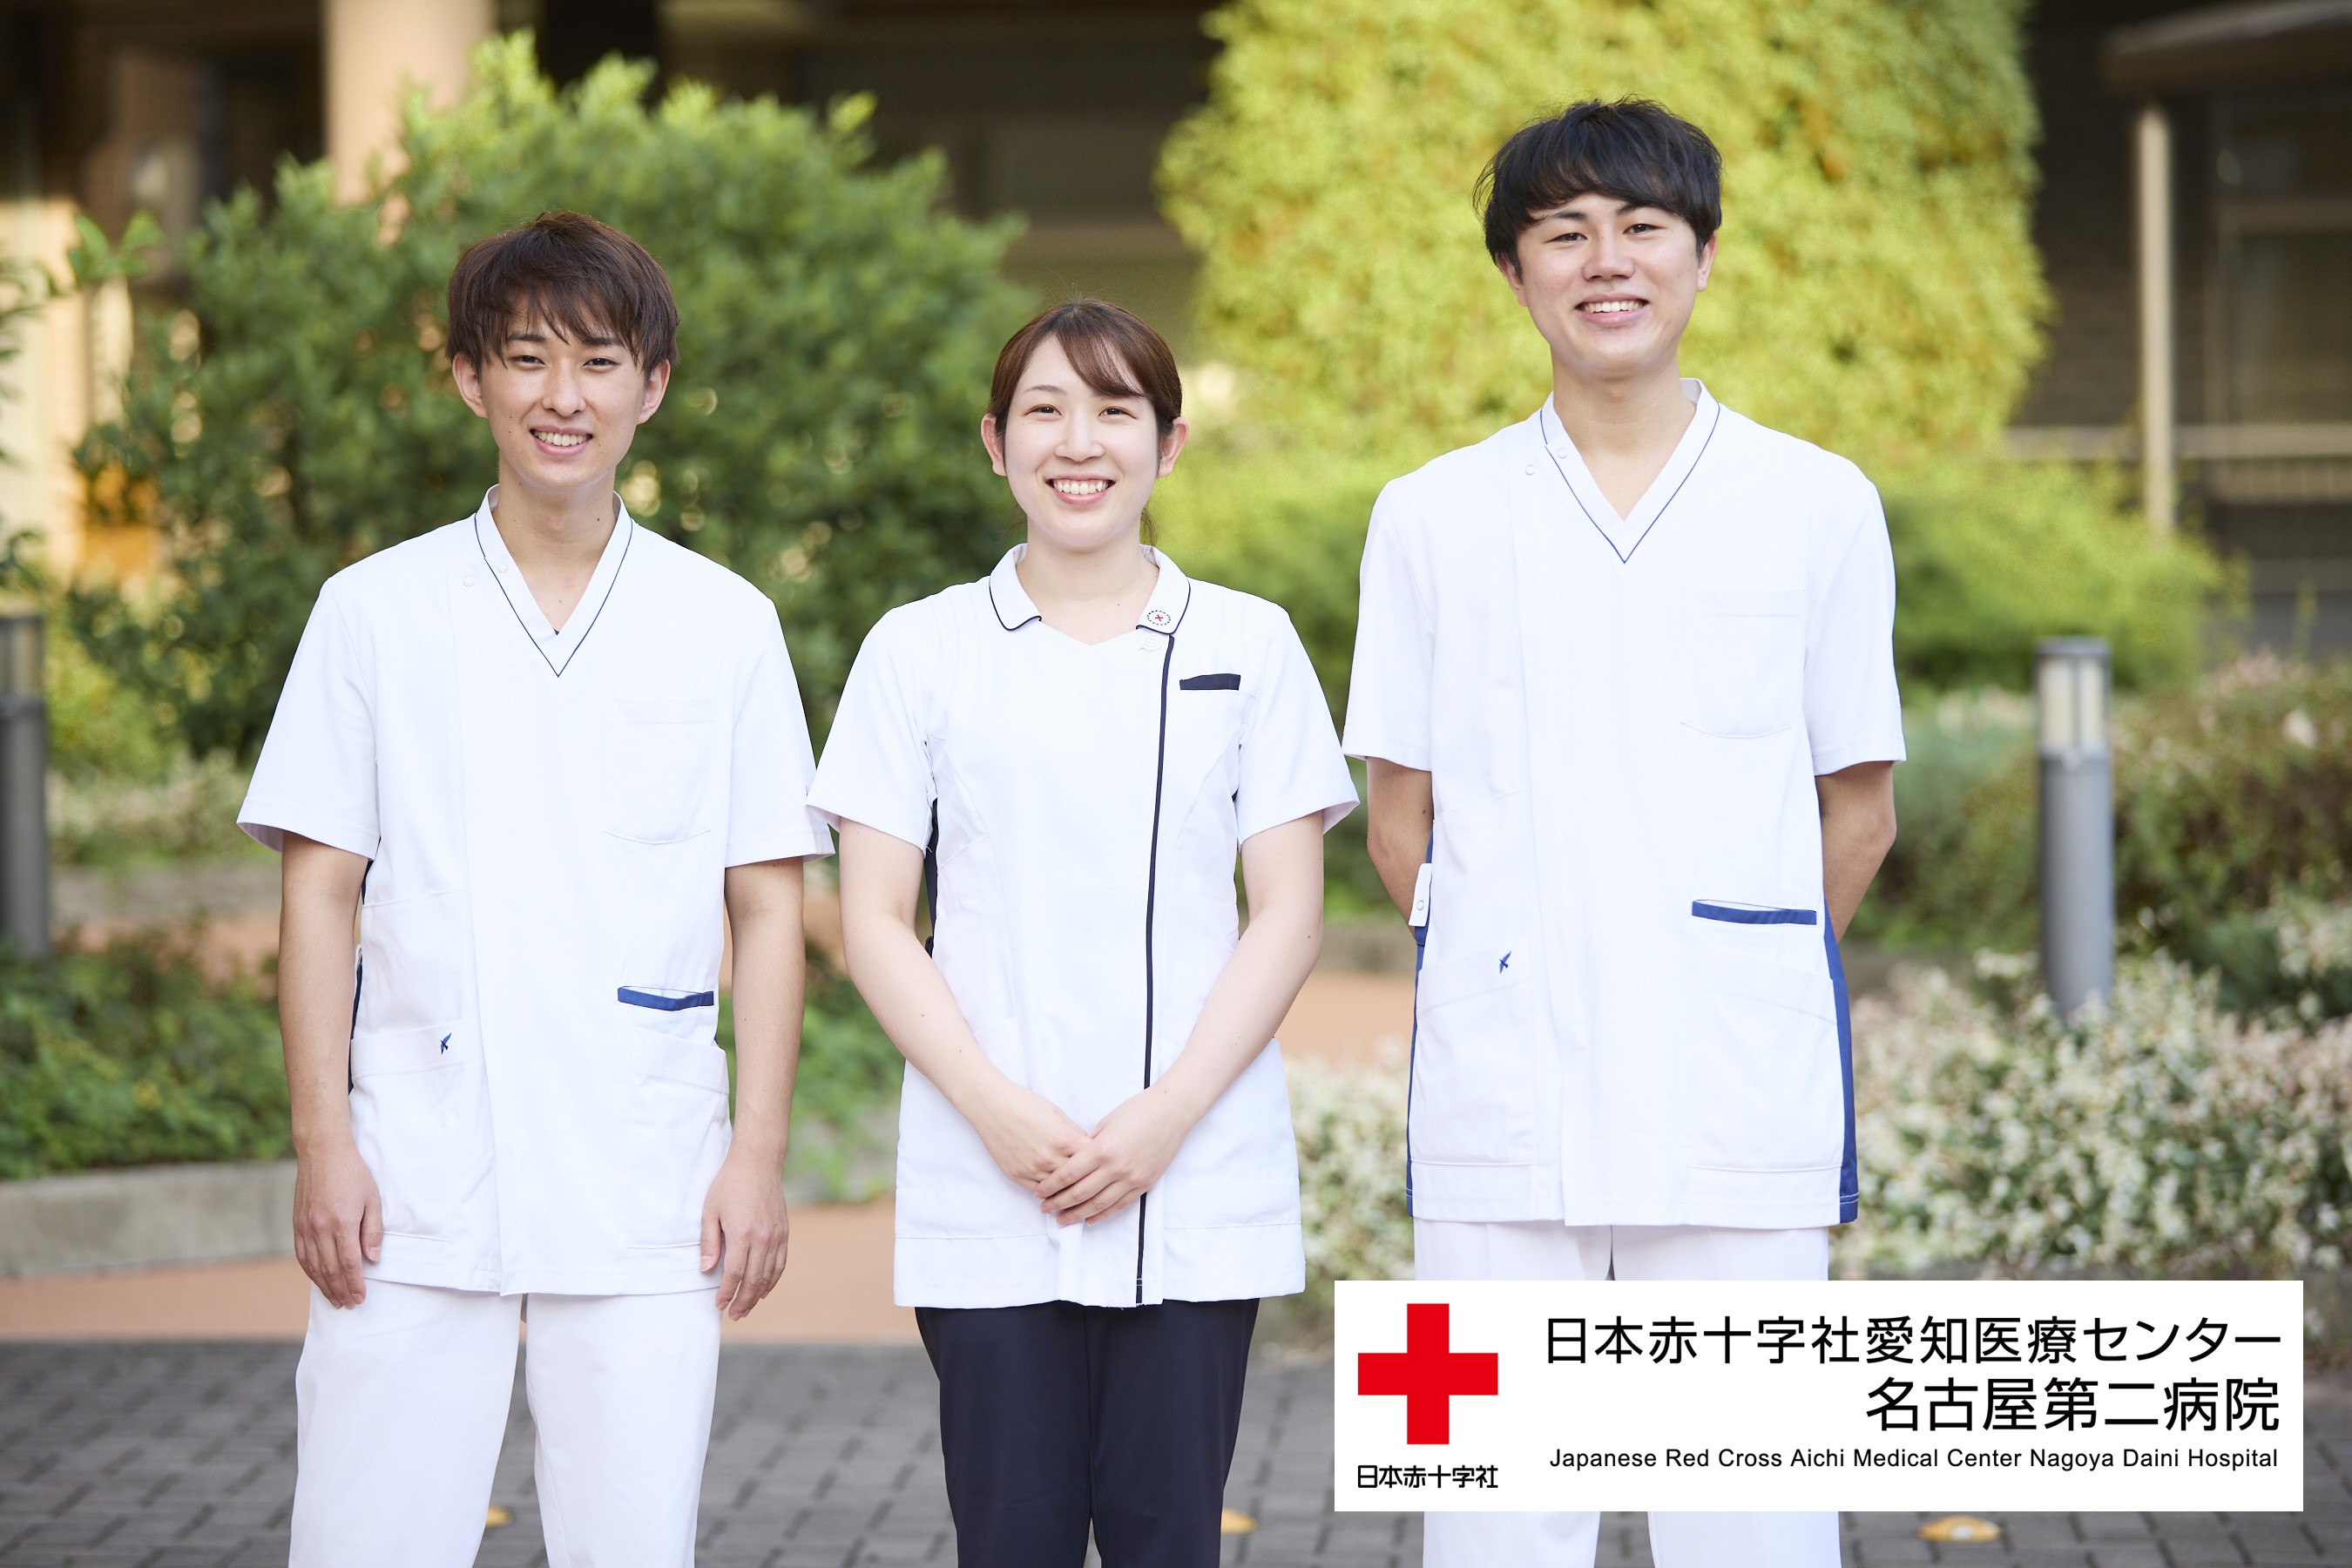 日本赤十字社愛知医療センター名古屋第二病院